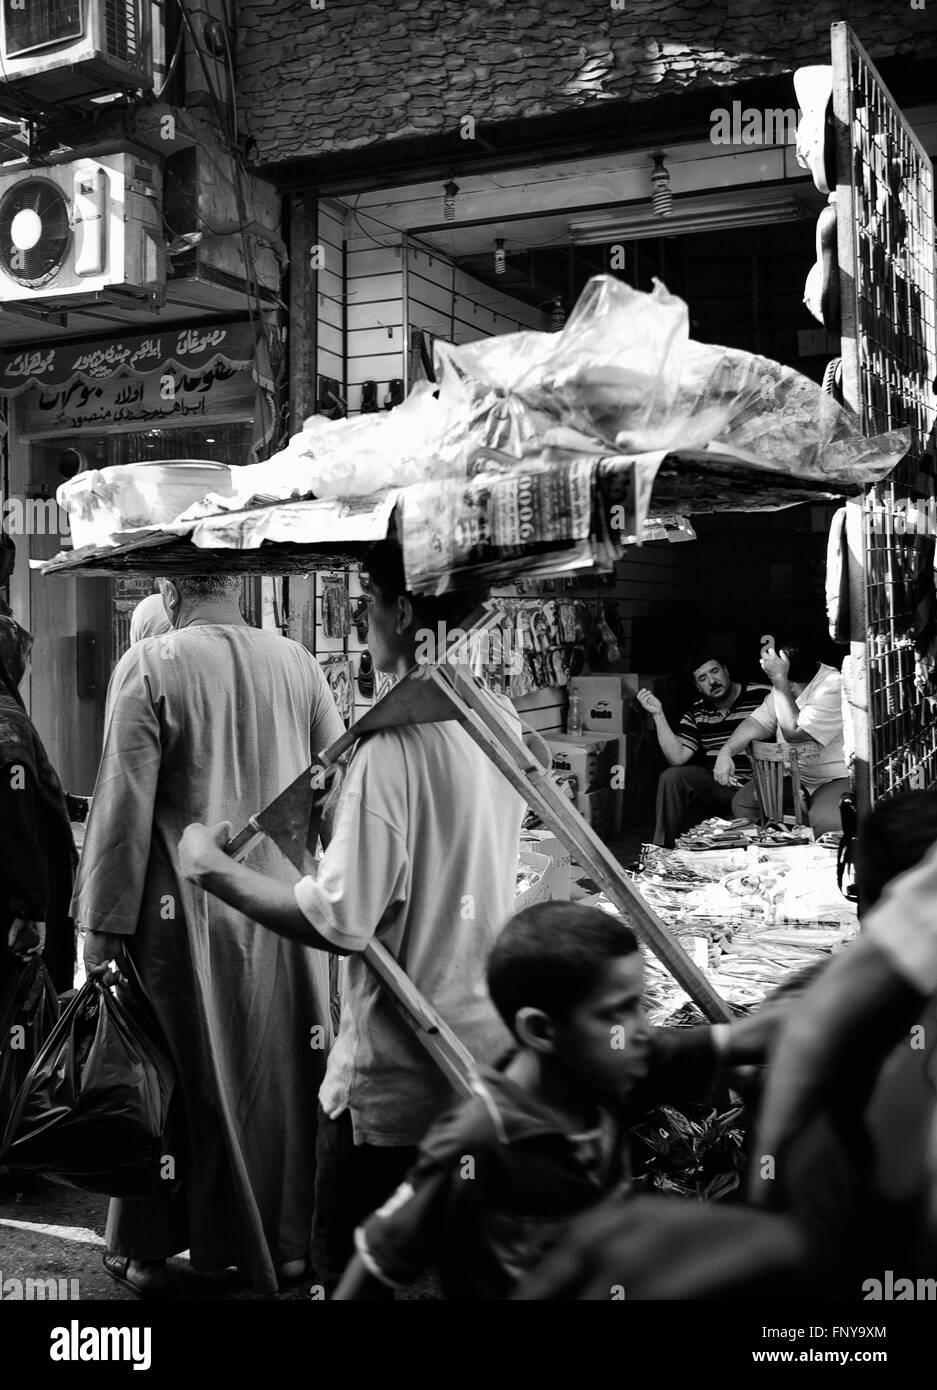 Il Cairo, Egitto - Lug 22: un ragazzo trasporta merci dalle strade di Khan El Khalili Bazaar, un grande souk nel quartiere islamico su Foto Stock